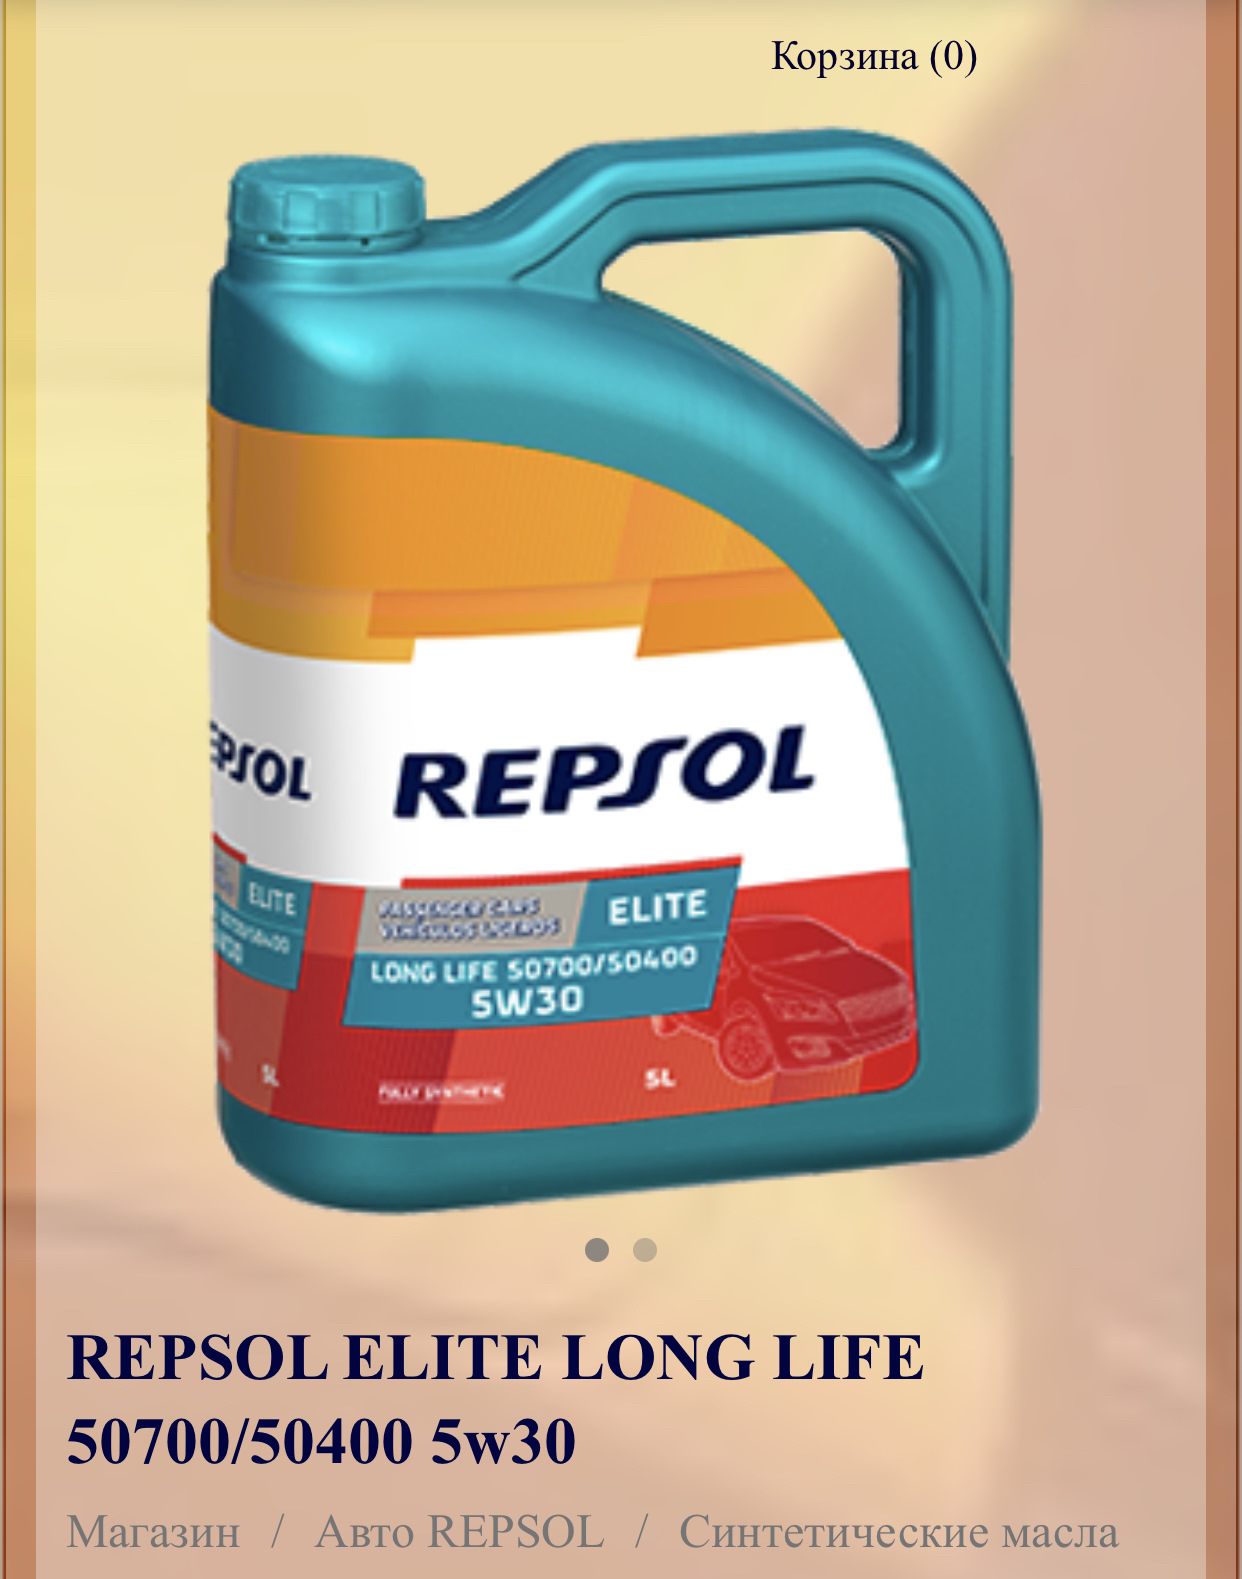 Elite long life 5w 30. Repsol Elite long Life 50700/50400 5w30. Repsol Evolution long Life 5w30. Repsol Evolution 5w30. Repsol 5w30 504.